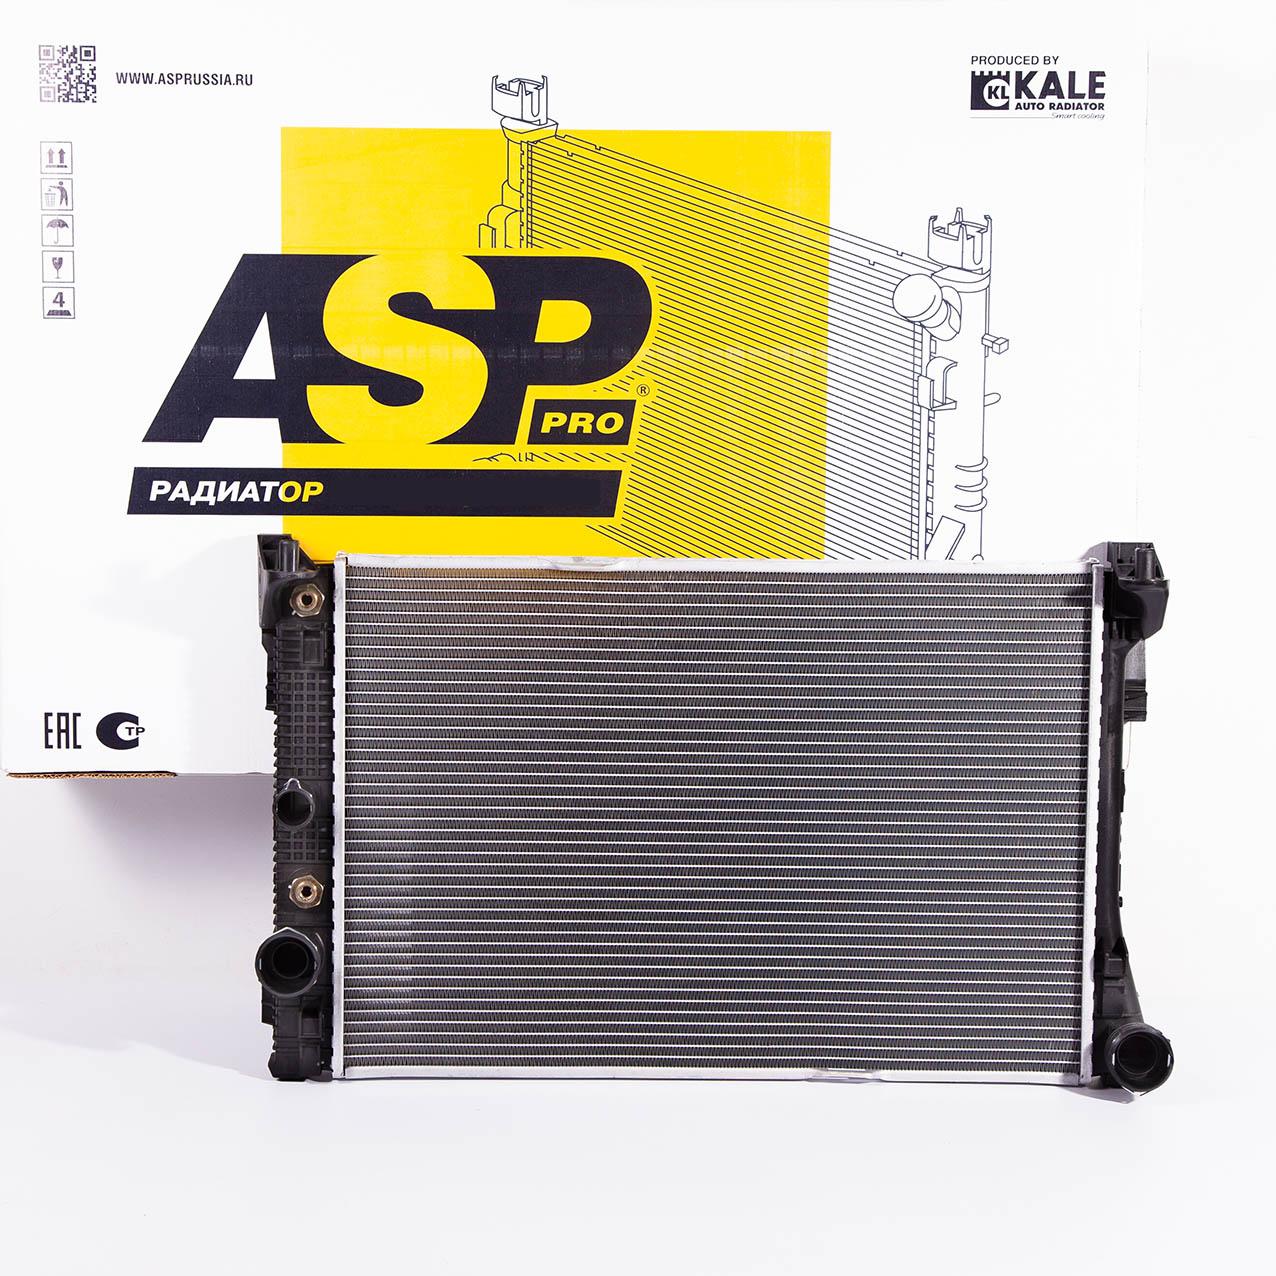 ASP AL10549 Радиатор охлаждения  1шт